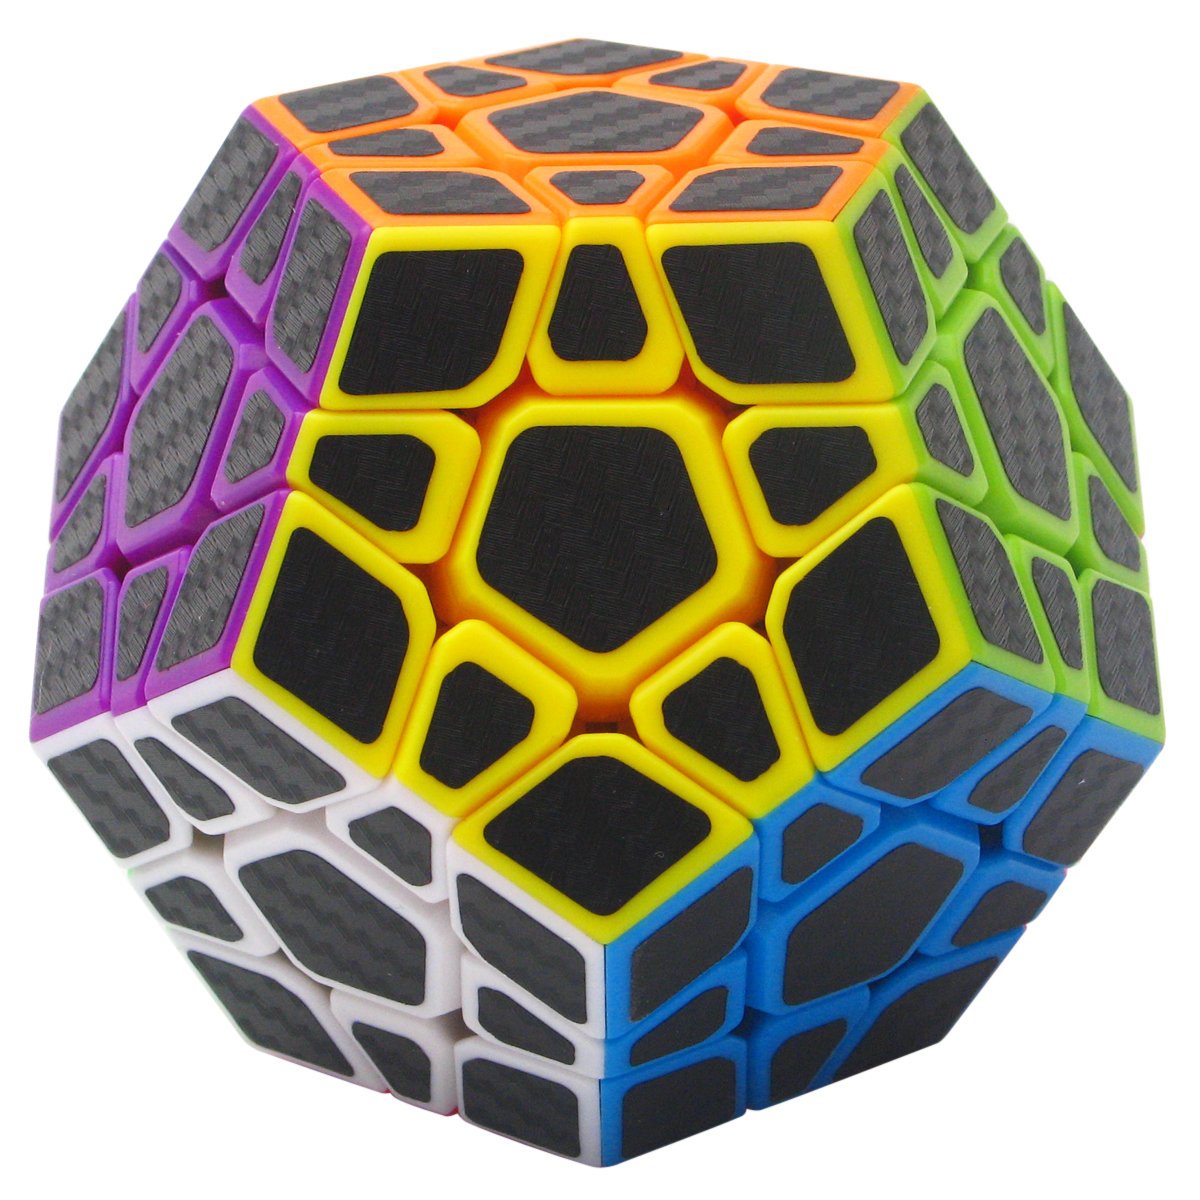 grand escompte Coolzon 3x3 Megaminx Puzzle Cube Nouveau Cubo Autocollant de Carbone Fibre Ultra Rapide bfve9QIdJ juste de l´acheter